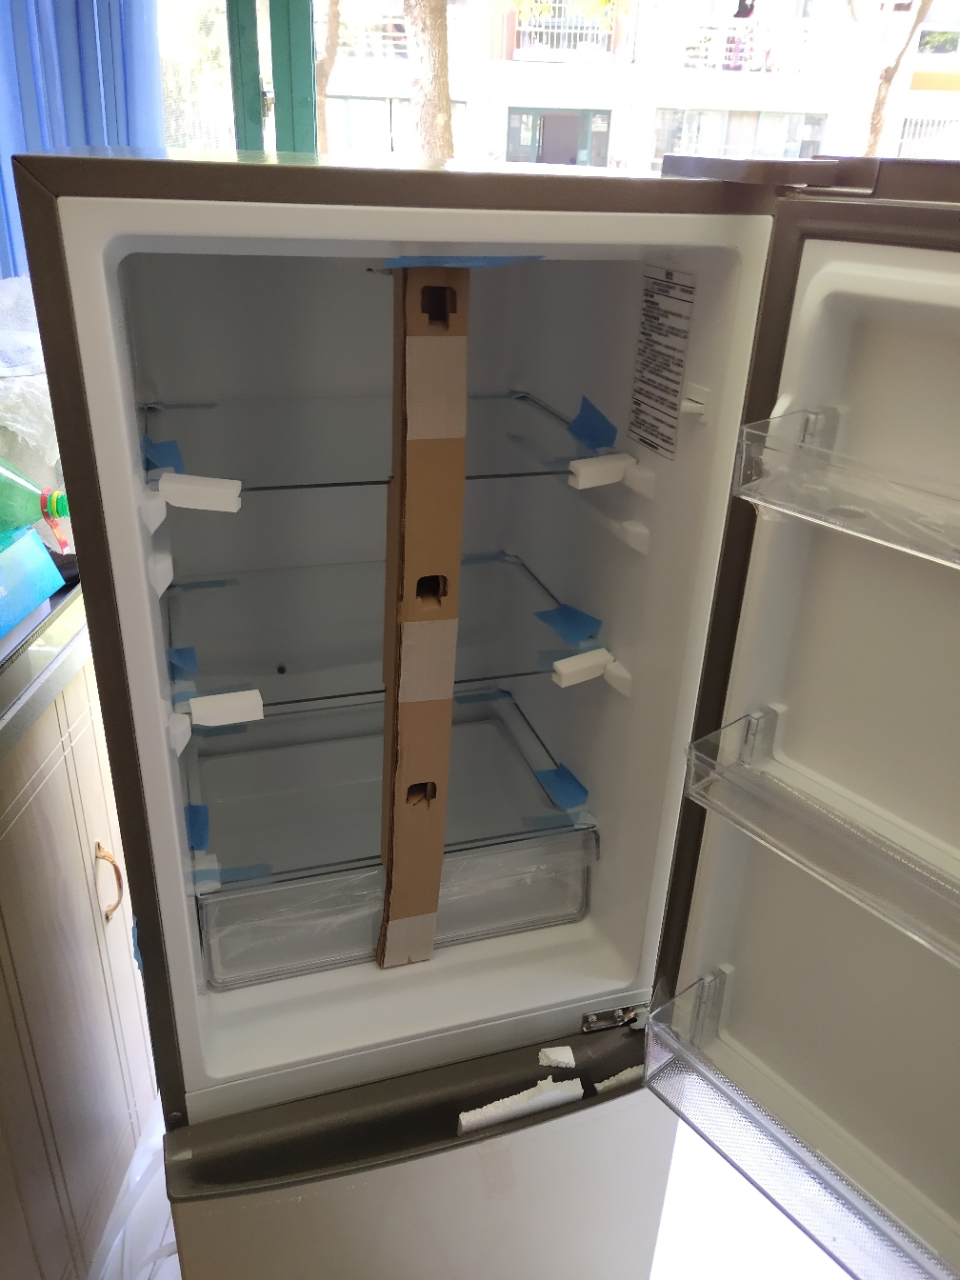 冰箱冷冻照片家用图片